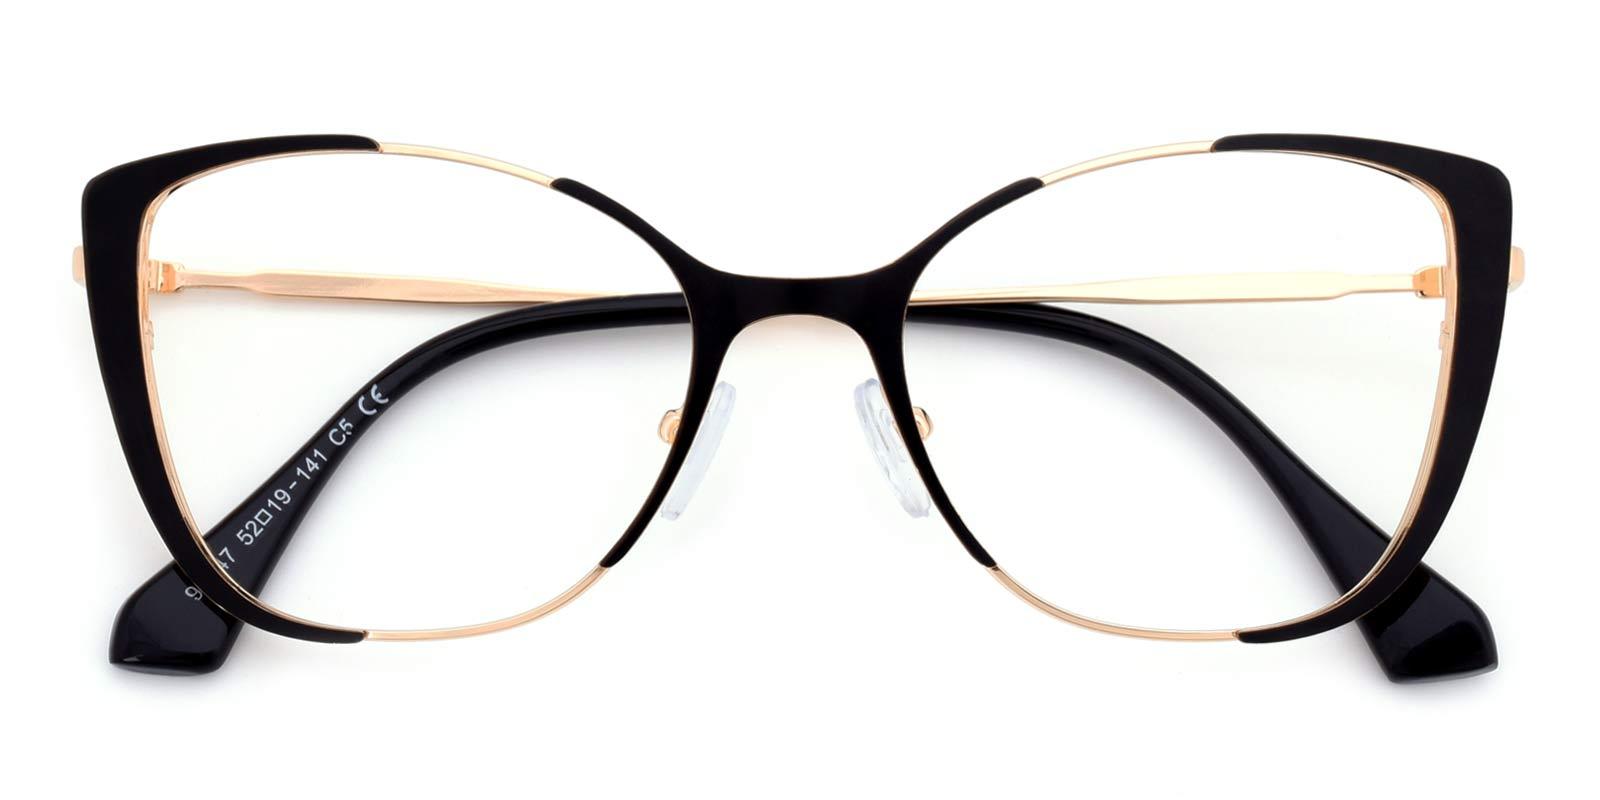 Flora-Black-Cat / Square-Combination-Eyeglasses-detail